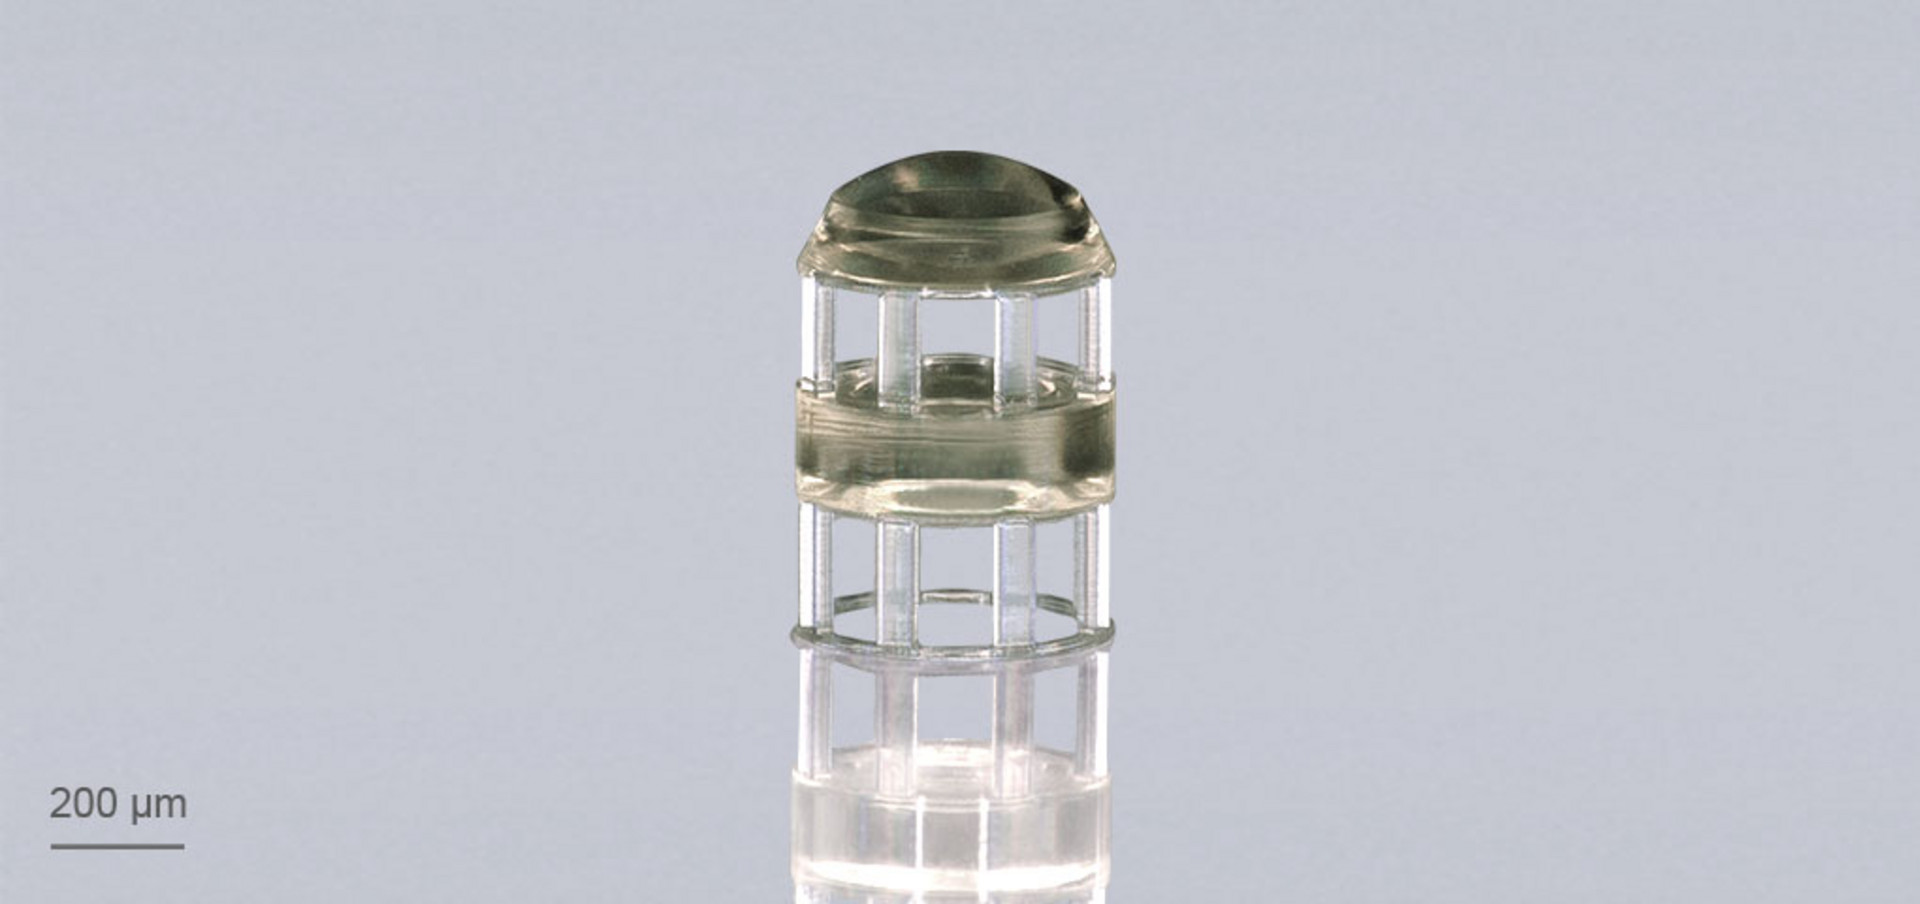 Compound lens system by Nanoscribe